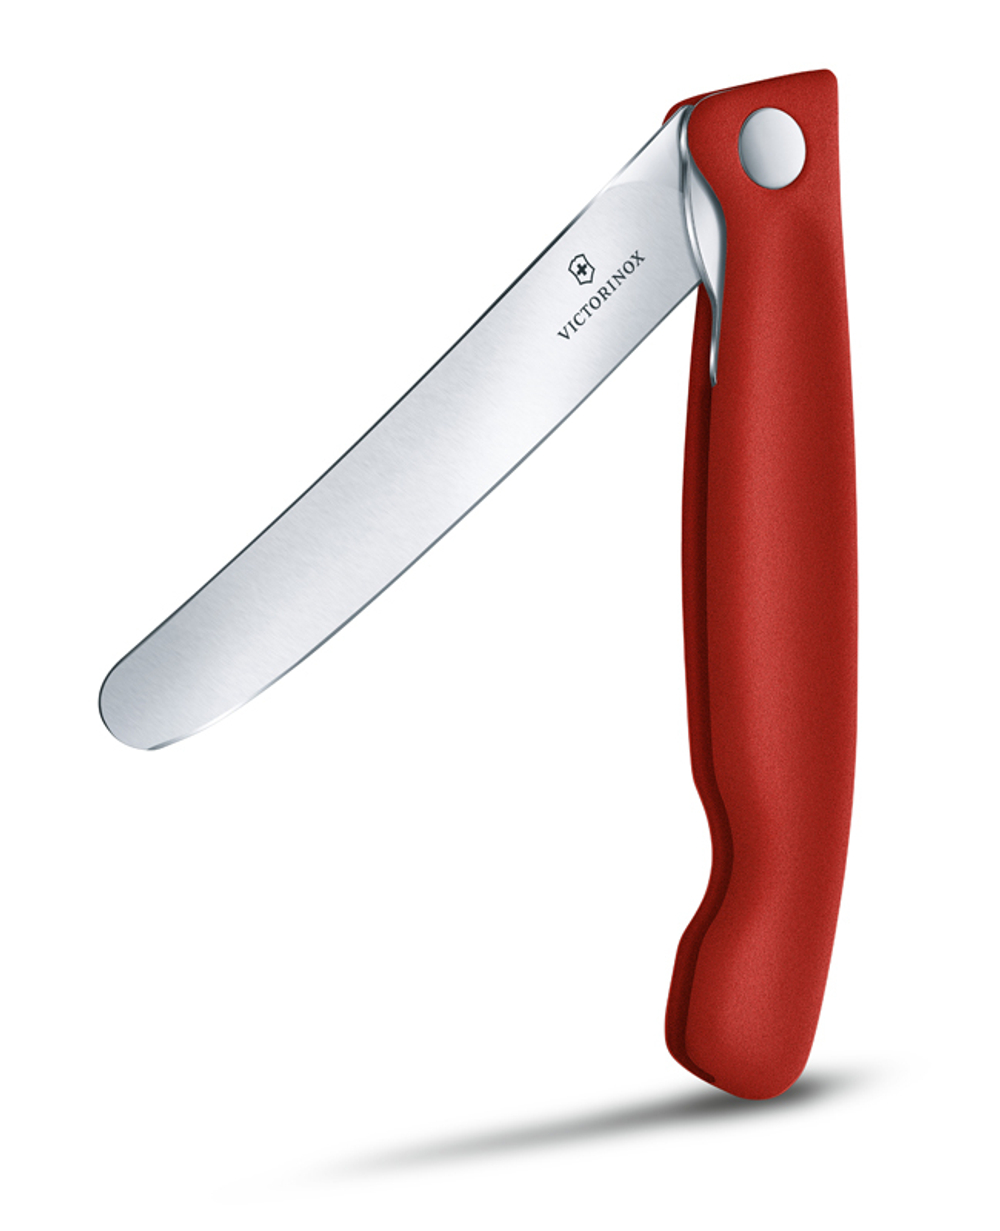 Нож для овощей SwissClassic красный складной 11 см VICTORINOX 6.7801.FB